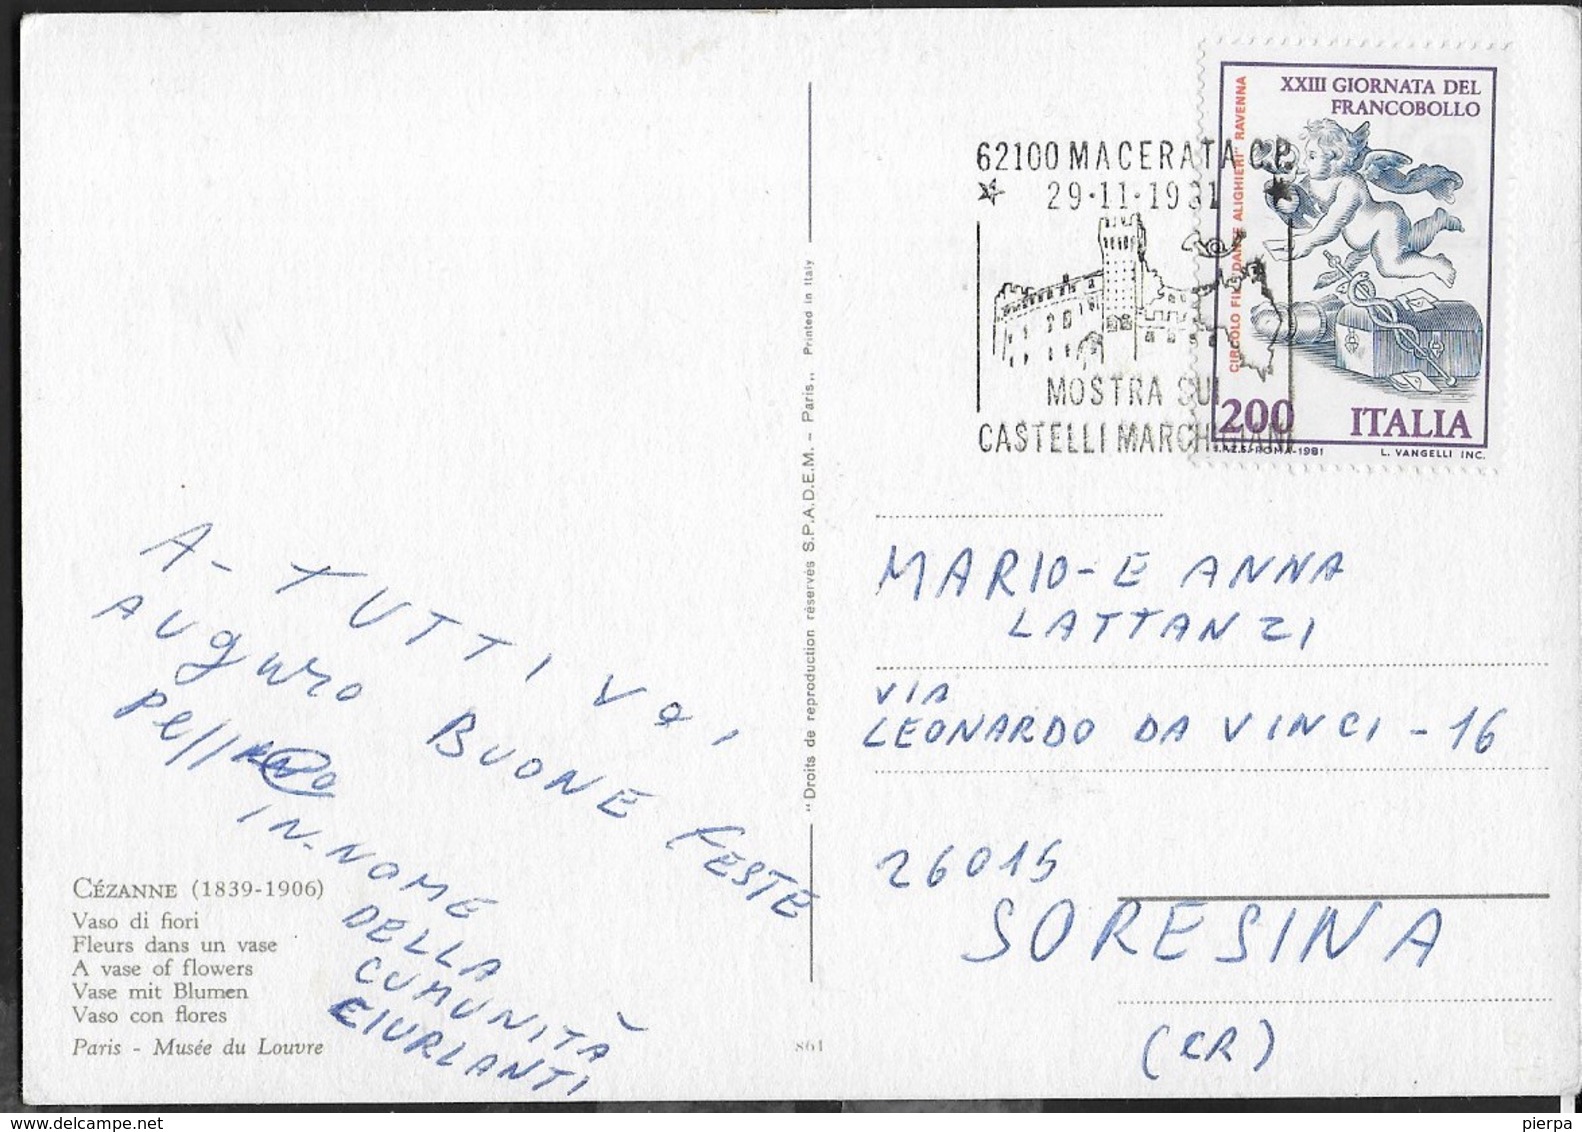 ANNULLO SPECIALE - MACERATA - 29.11.1981 - MOSTRA SUI CASTELLI MARCHIGIANI - SU CARTOLINA CEZANNE - VASO DI FIORI - Esposizioni Filateliche